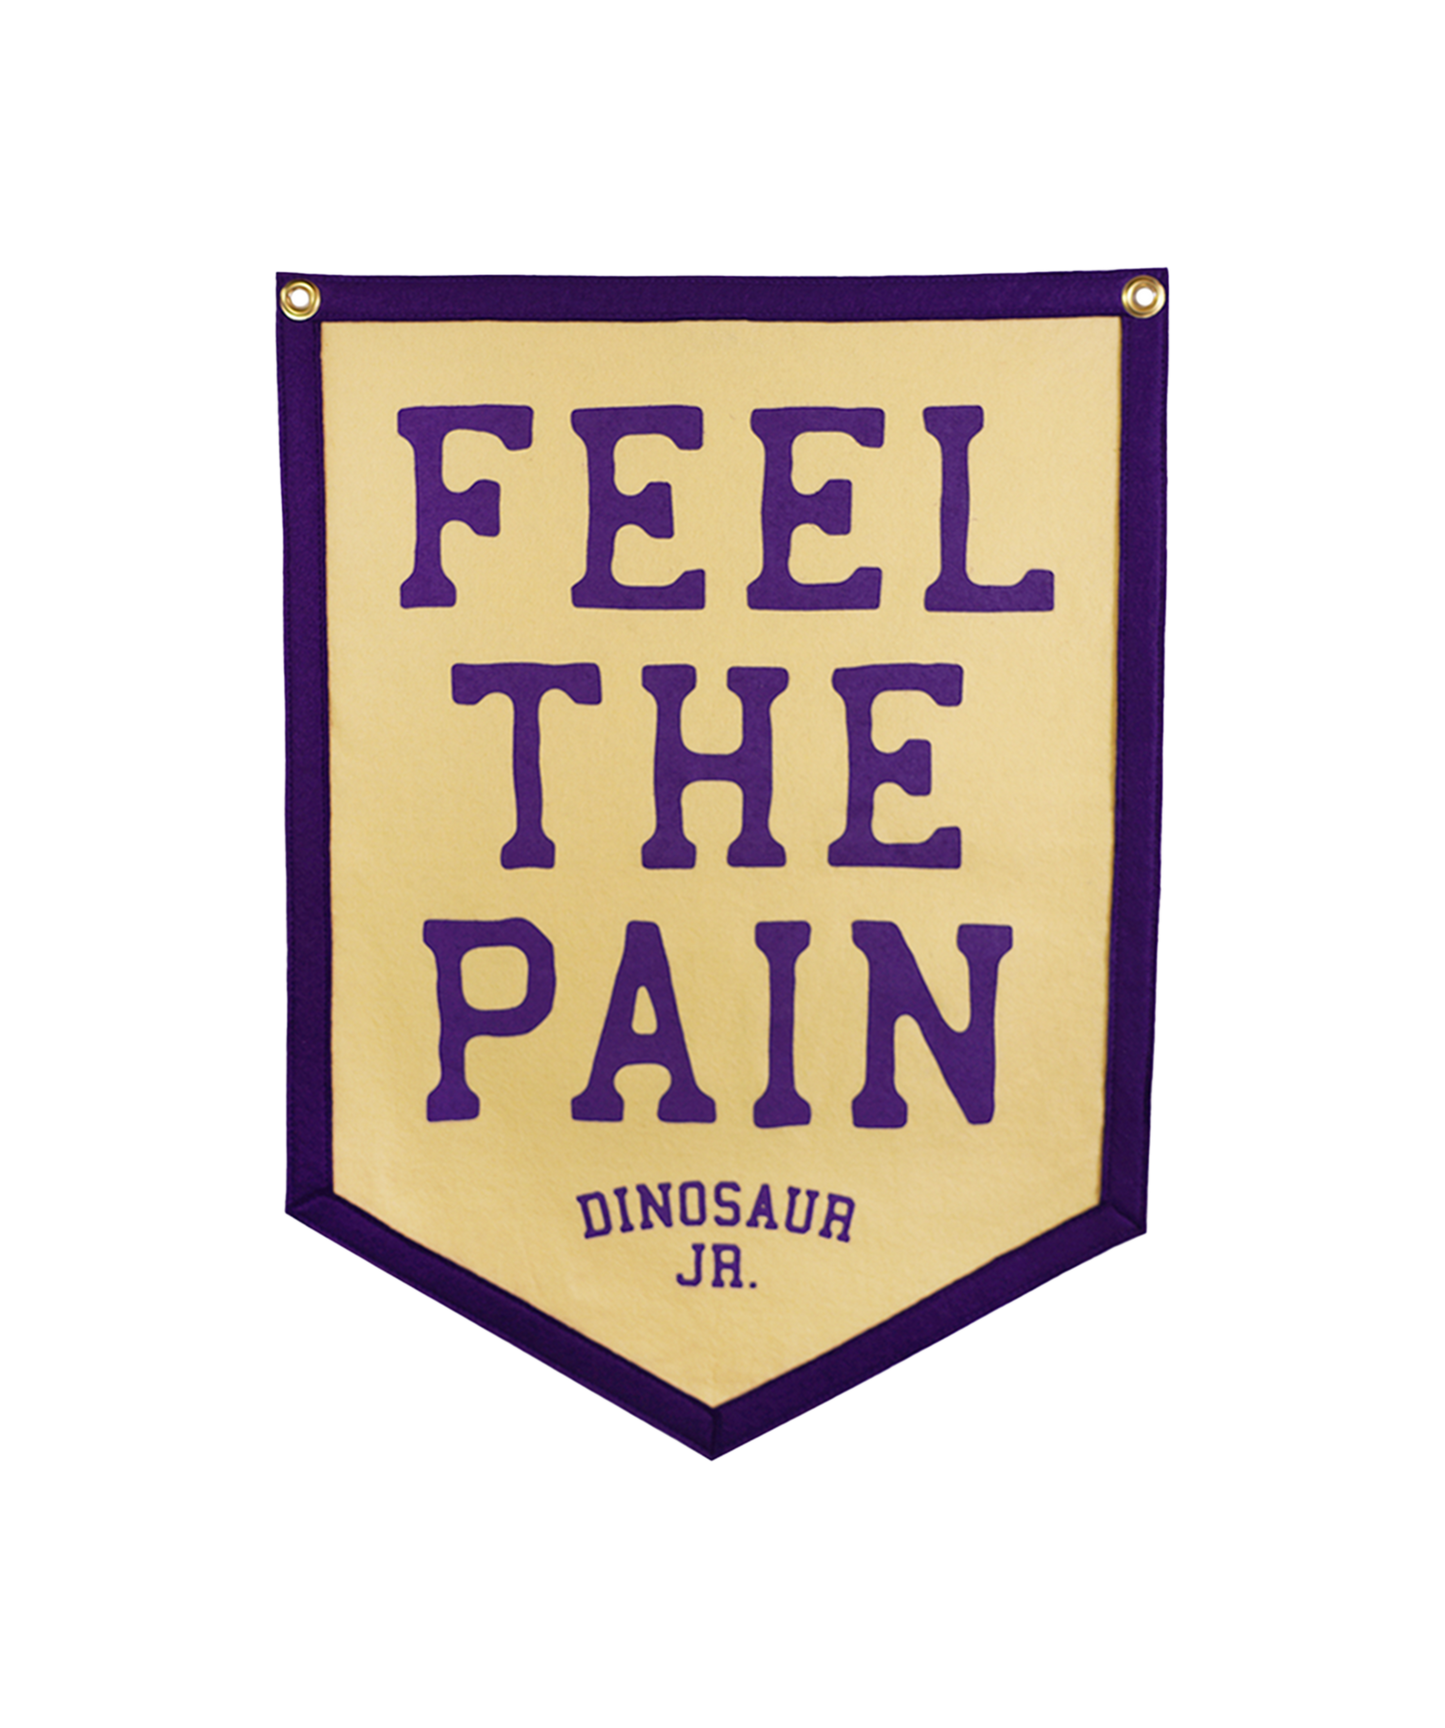 Feel the Pain Camp Flag • Dinosaur Jr. x Oxford Pennant